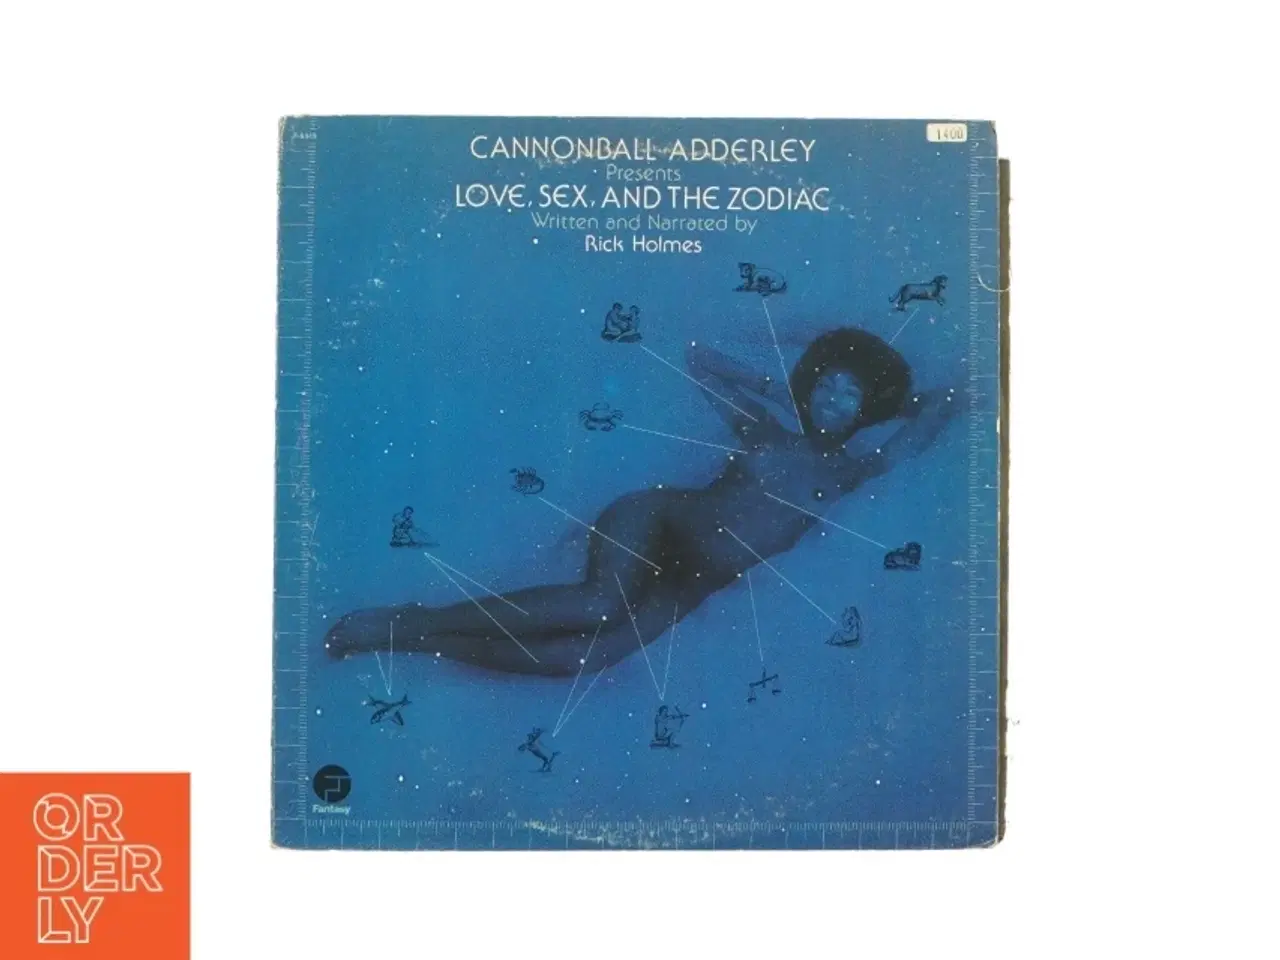 Billede 1 - Love, sex and the zodiac af Cannonball Adderley  fra LP